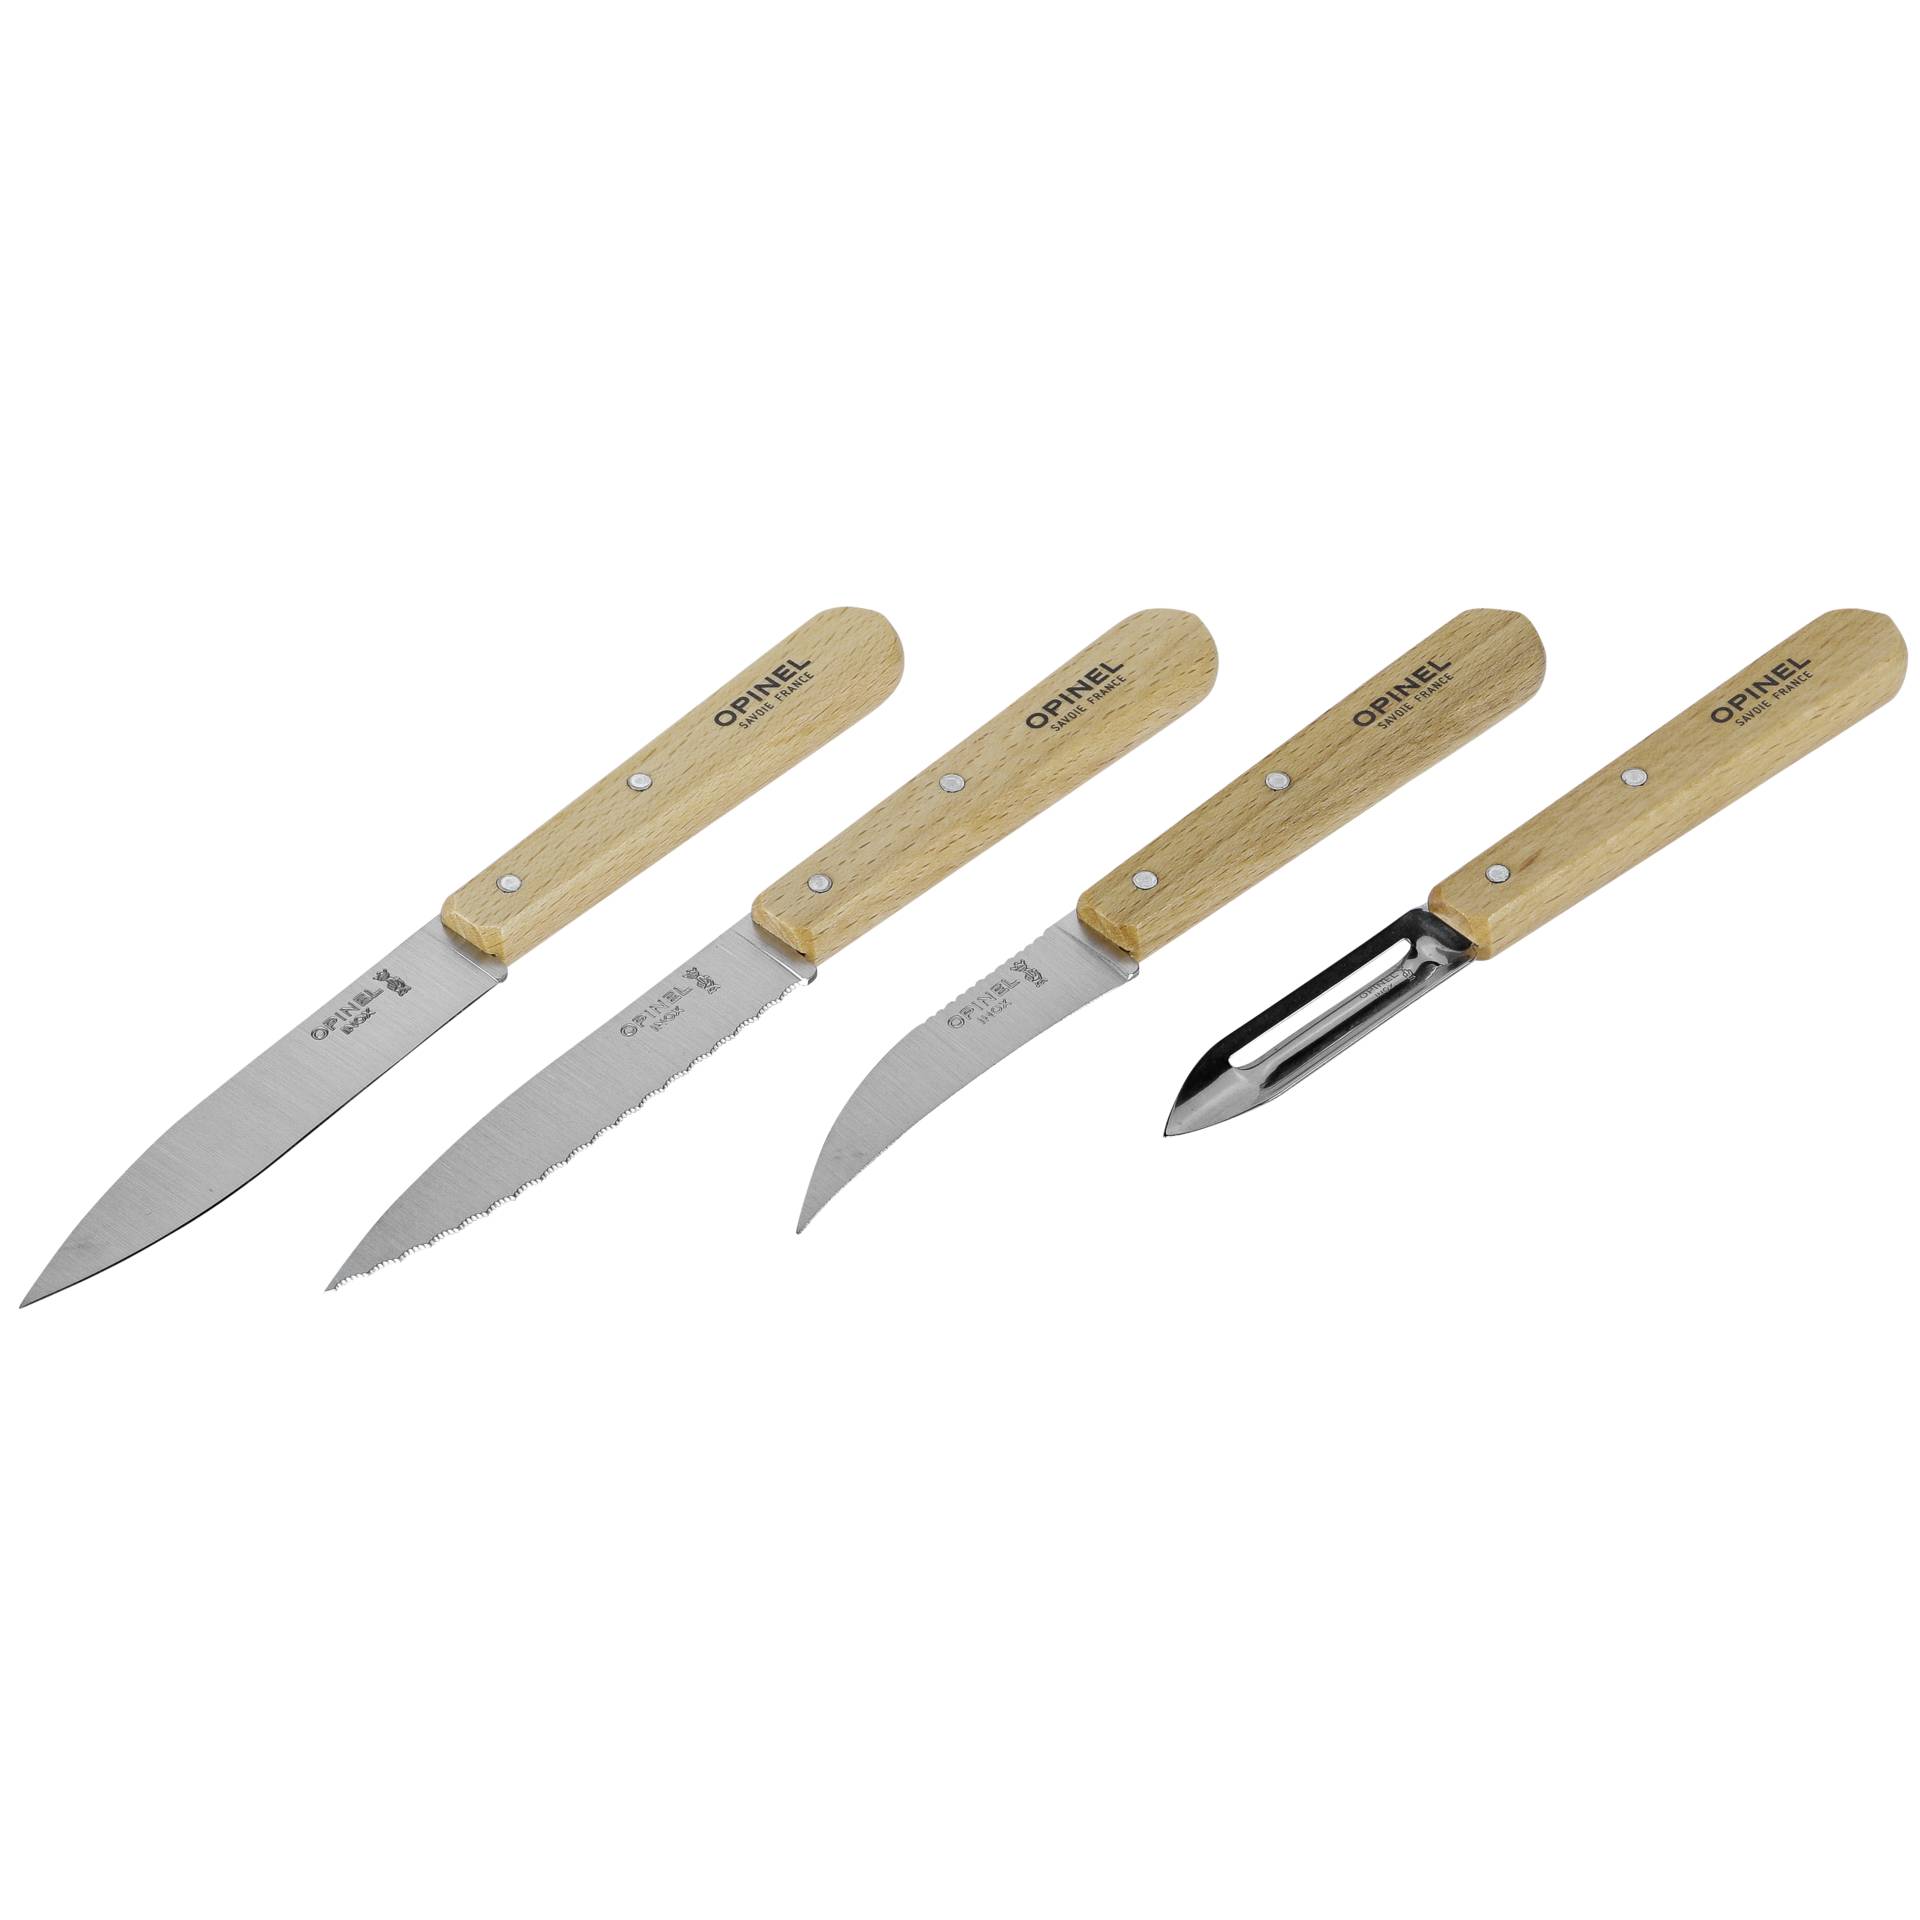 Opinel set coltelli da cucina 4 pezzi manico in legno